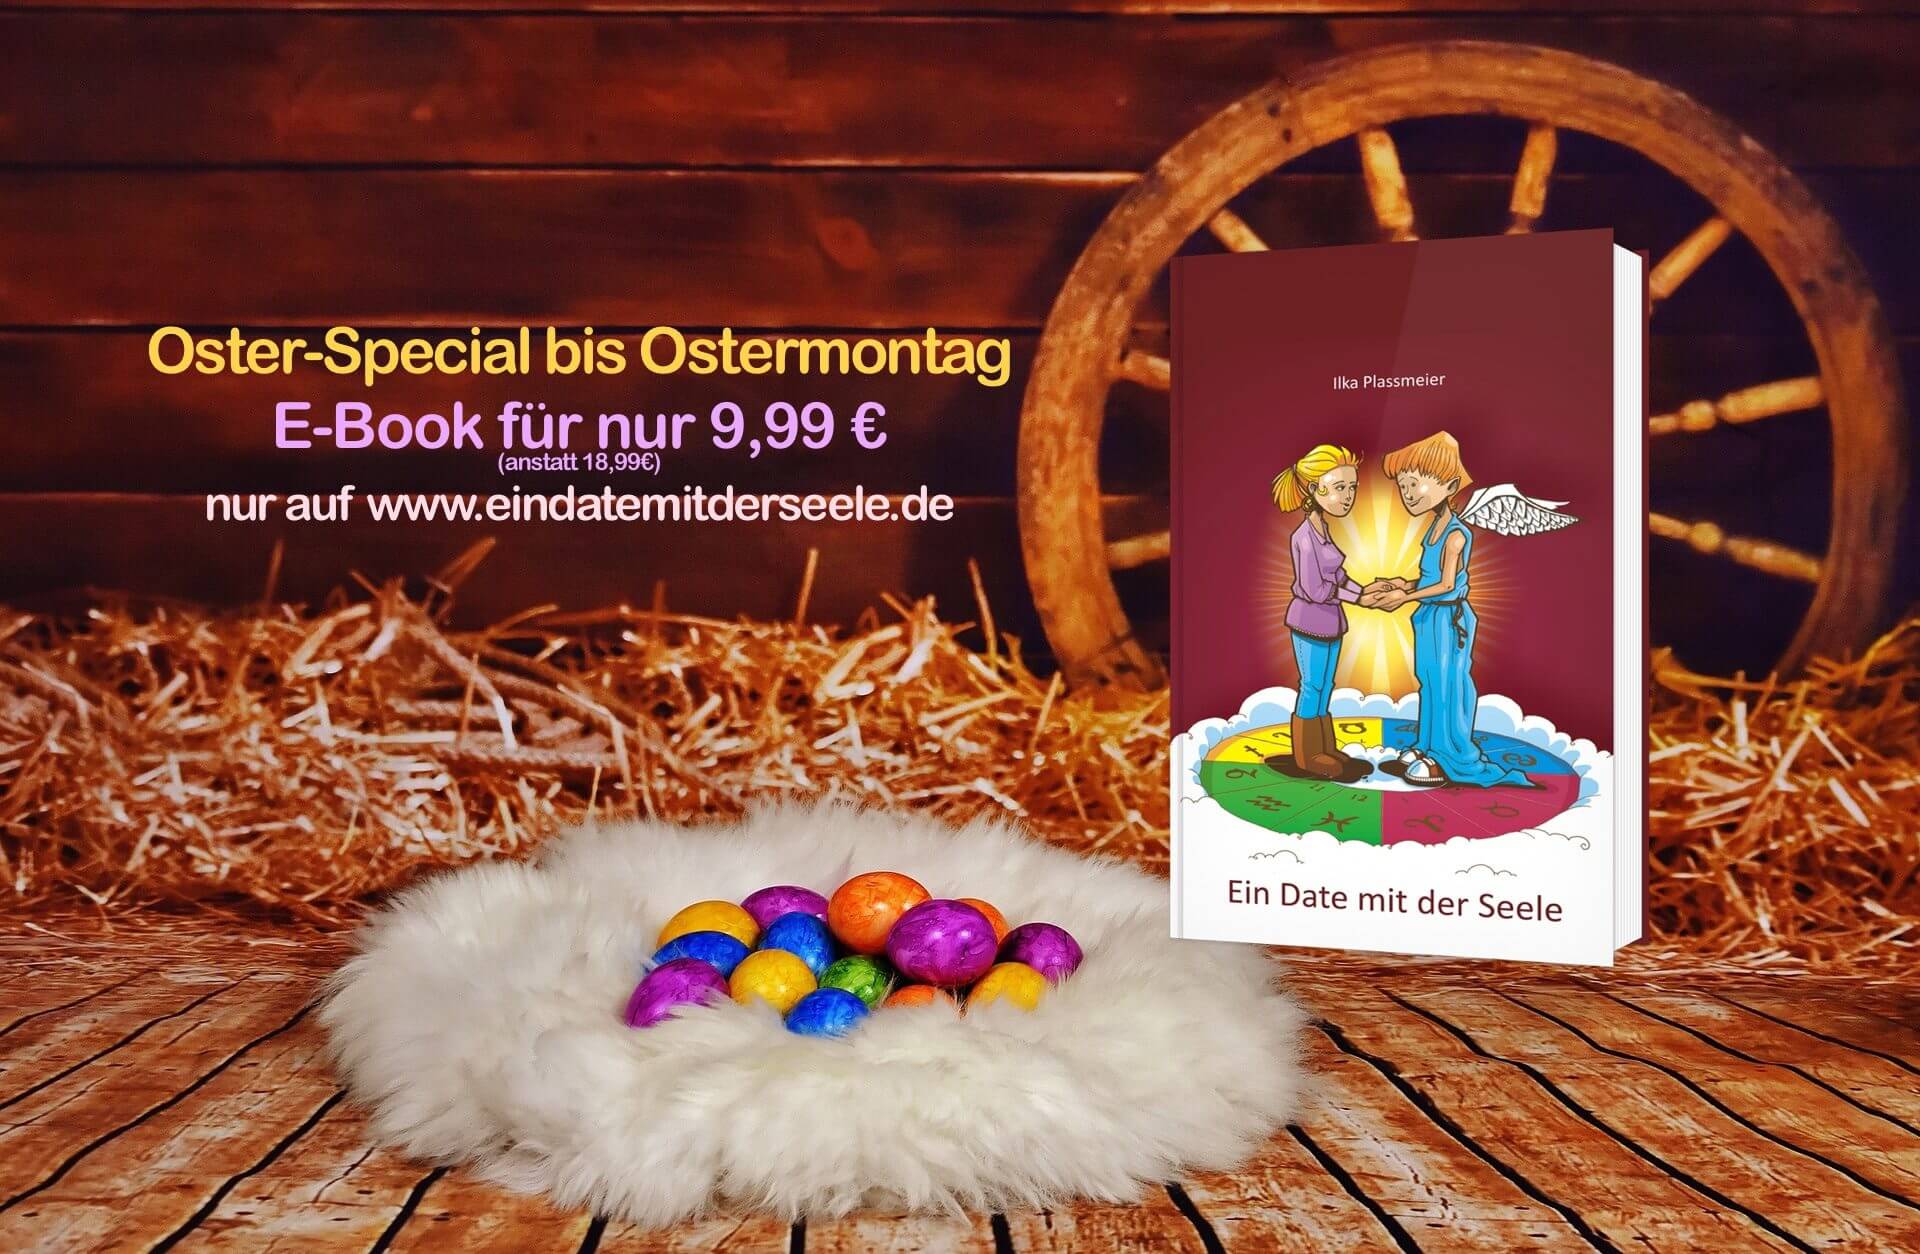 Oster-Special: Ein Date mit der Seele - das E-Book für nur 9,99 EUR